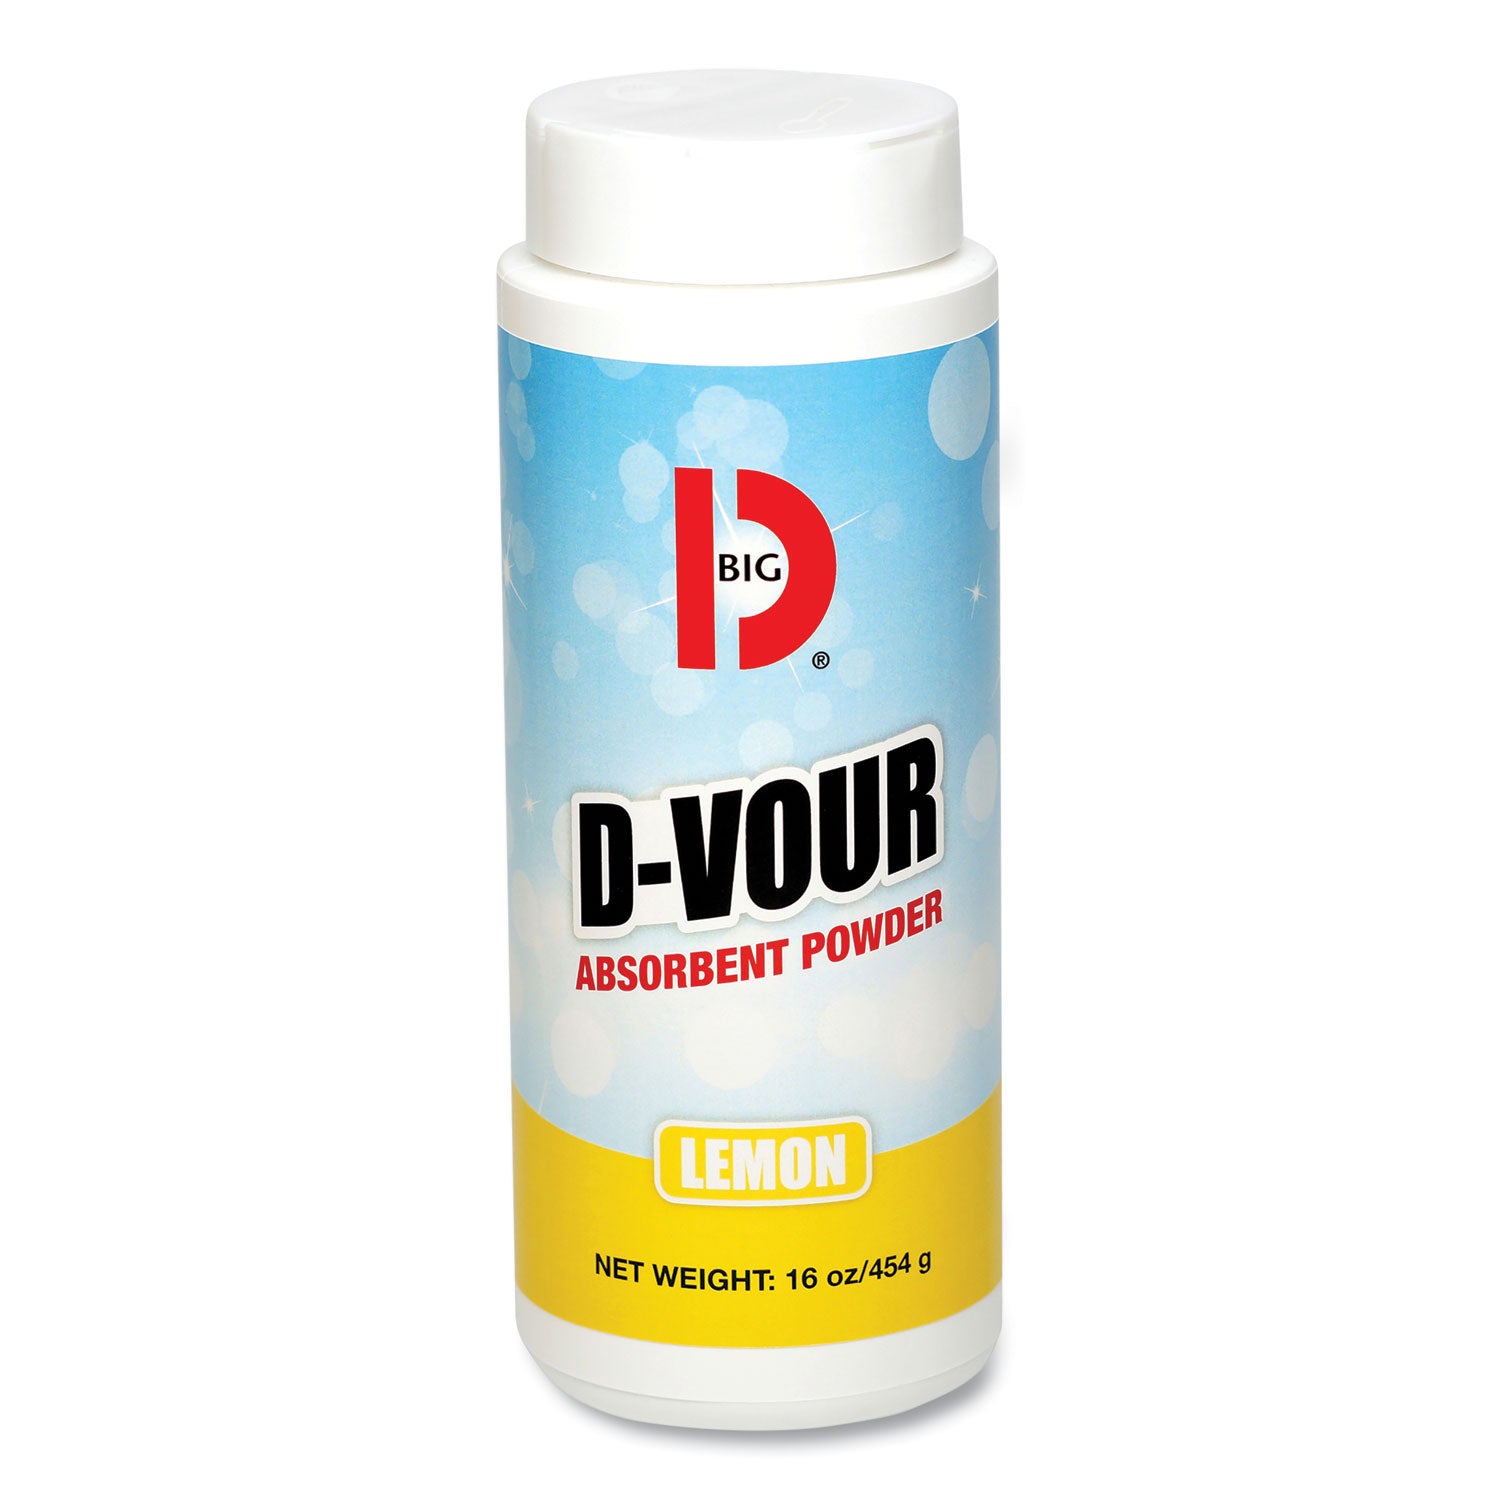 D-Vour Absorbent Powder, Lemon, 16 oz Canister, 6/Carton - 